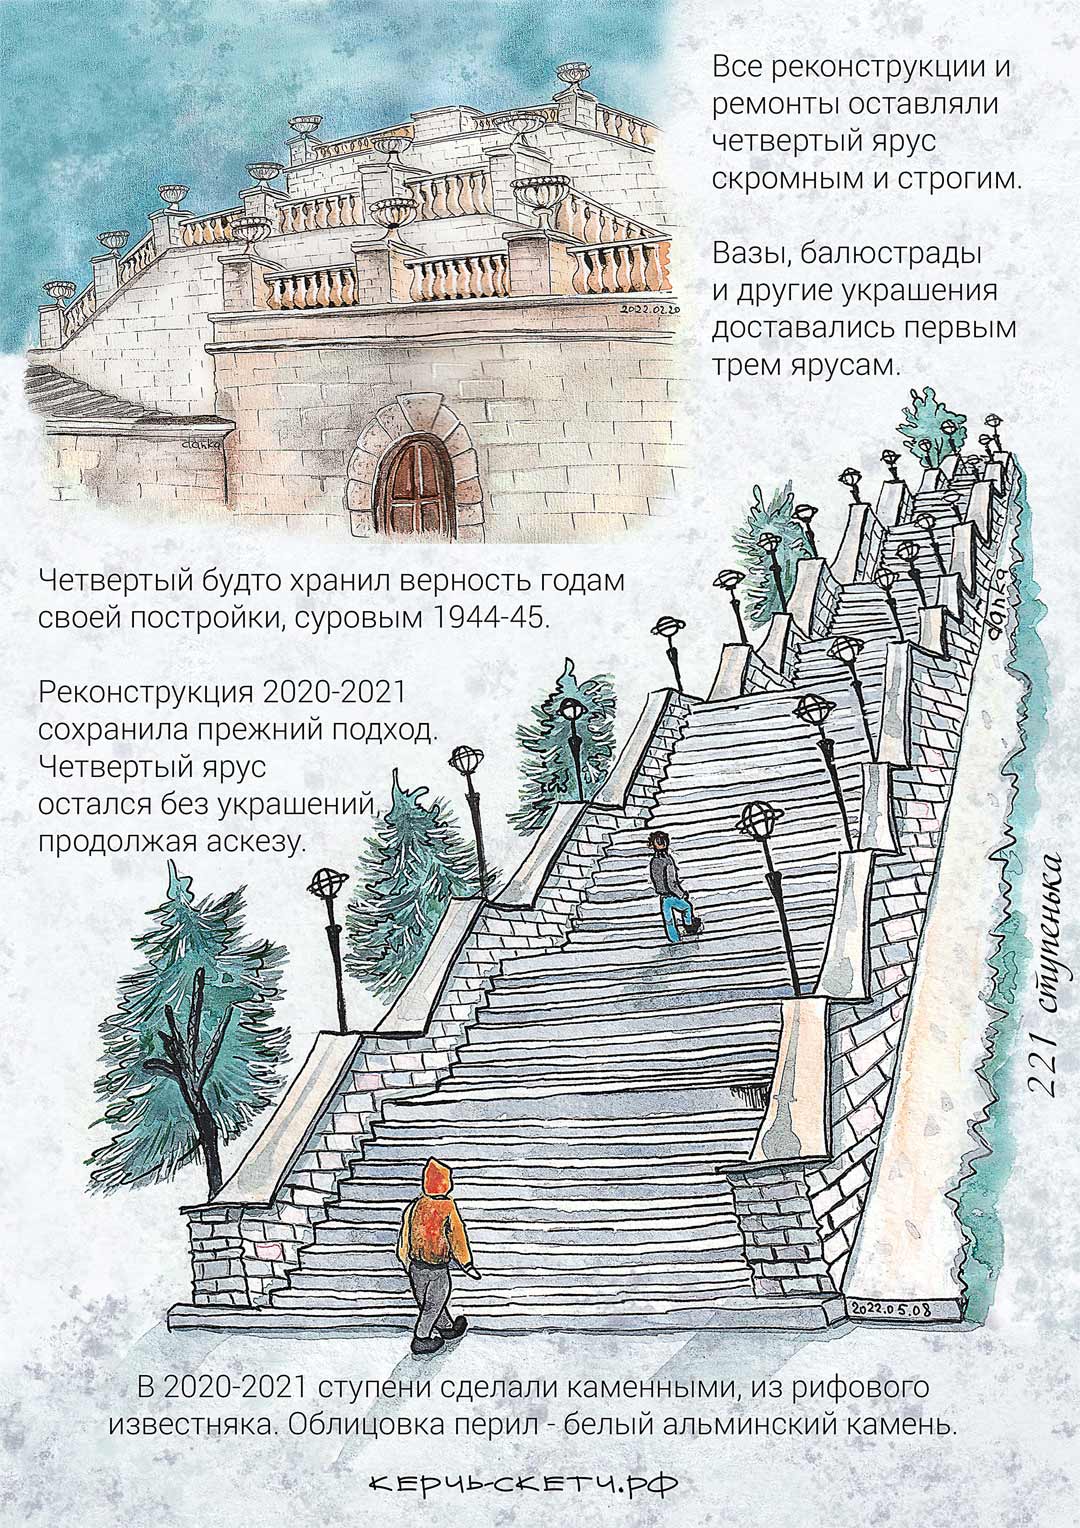 Рисунок 4 страницы открытки о четвертом ярусе Митридатской лестницы